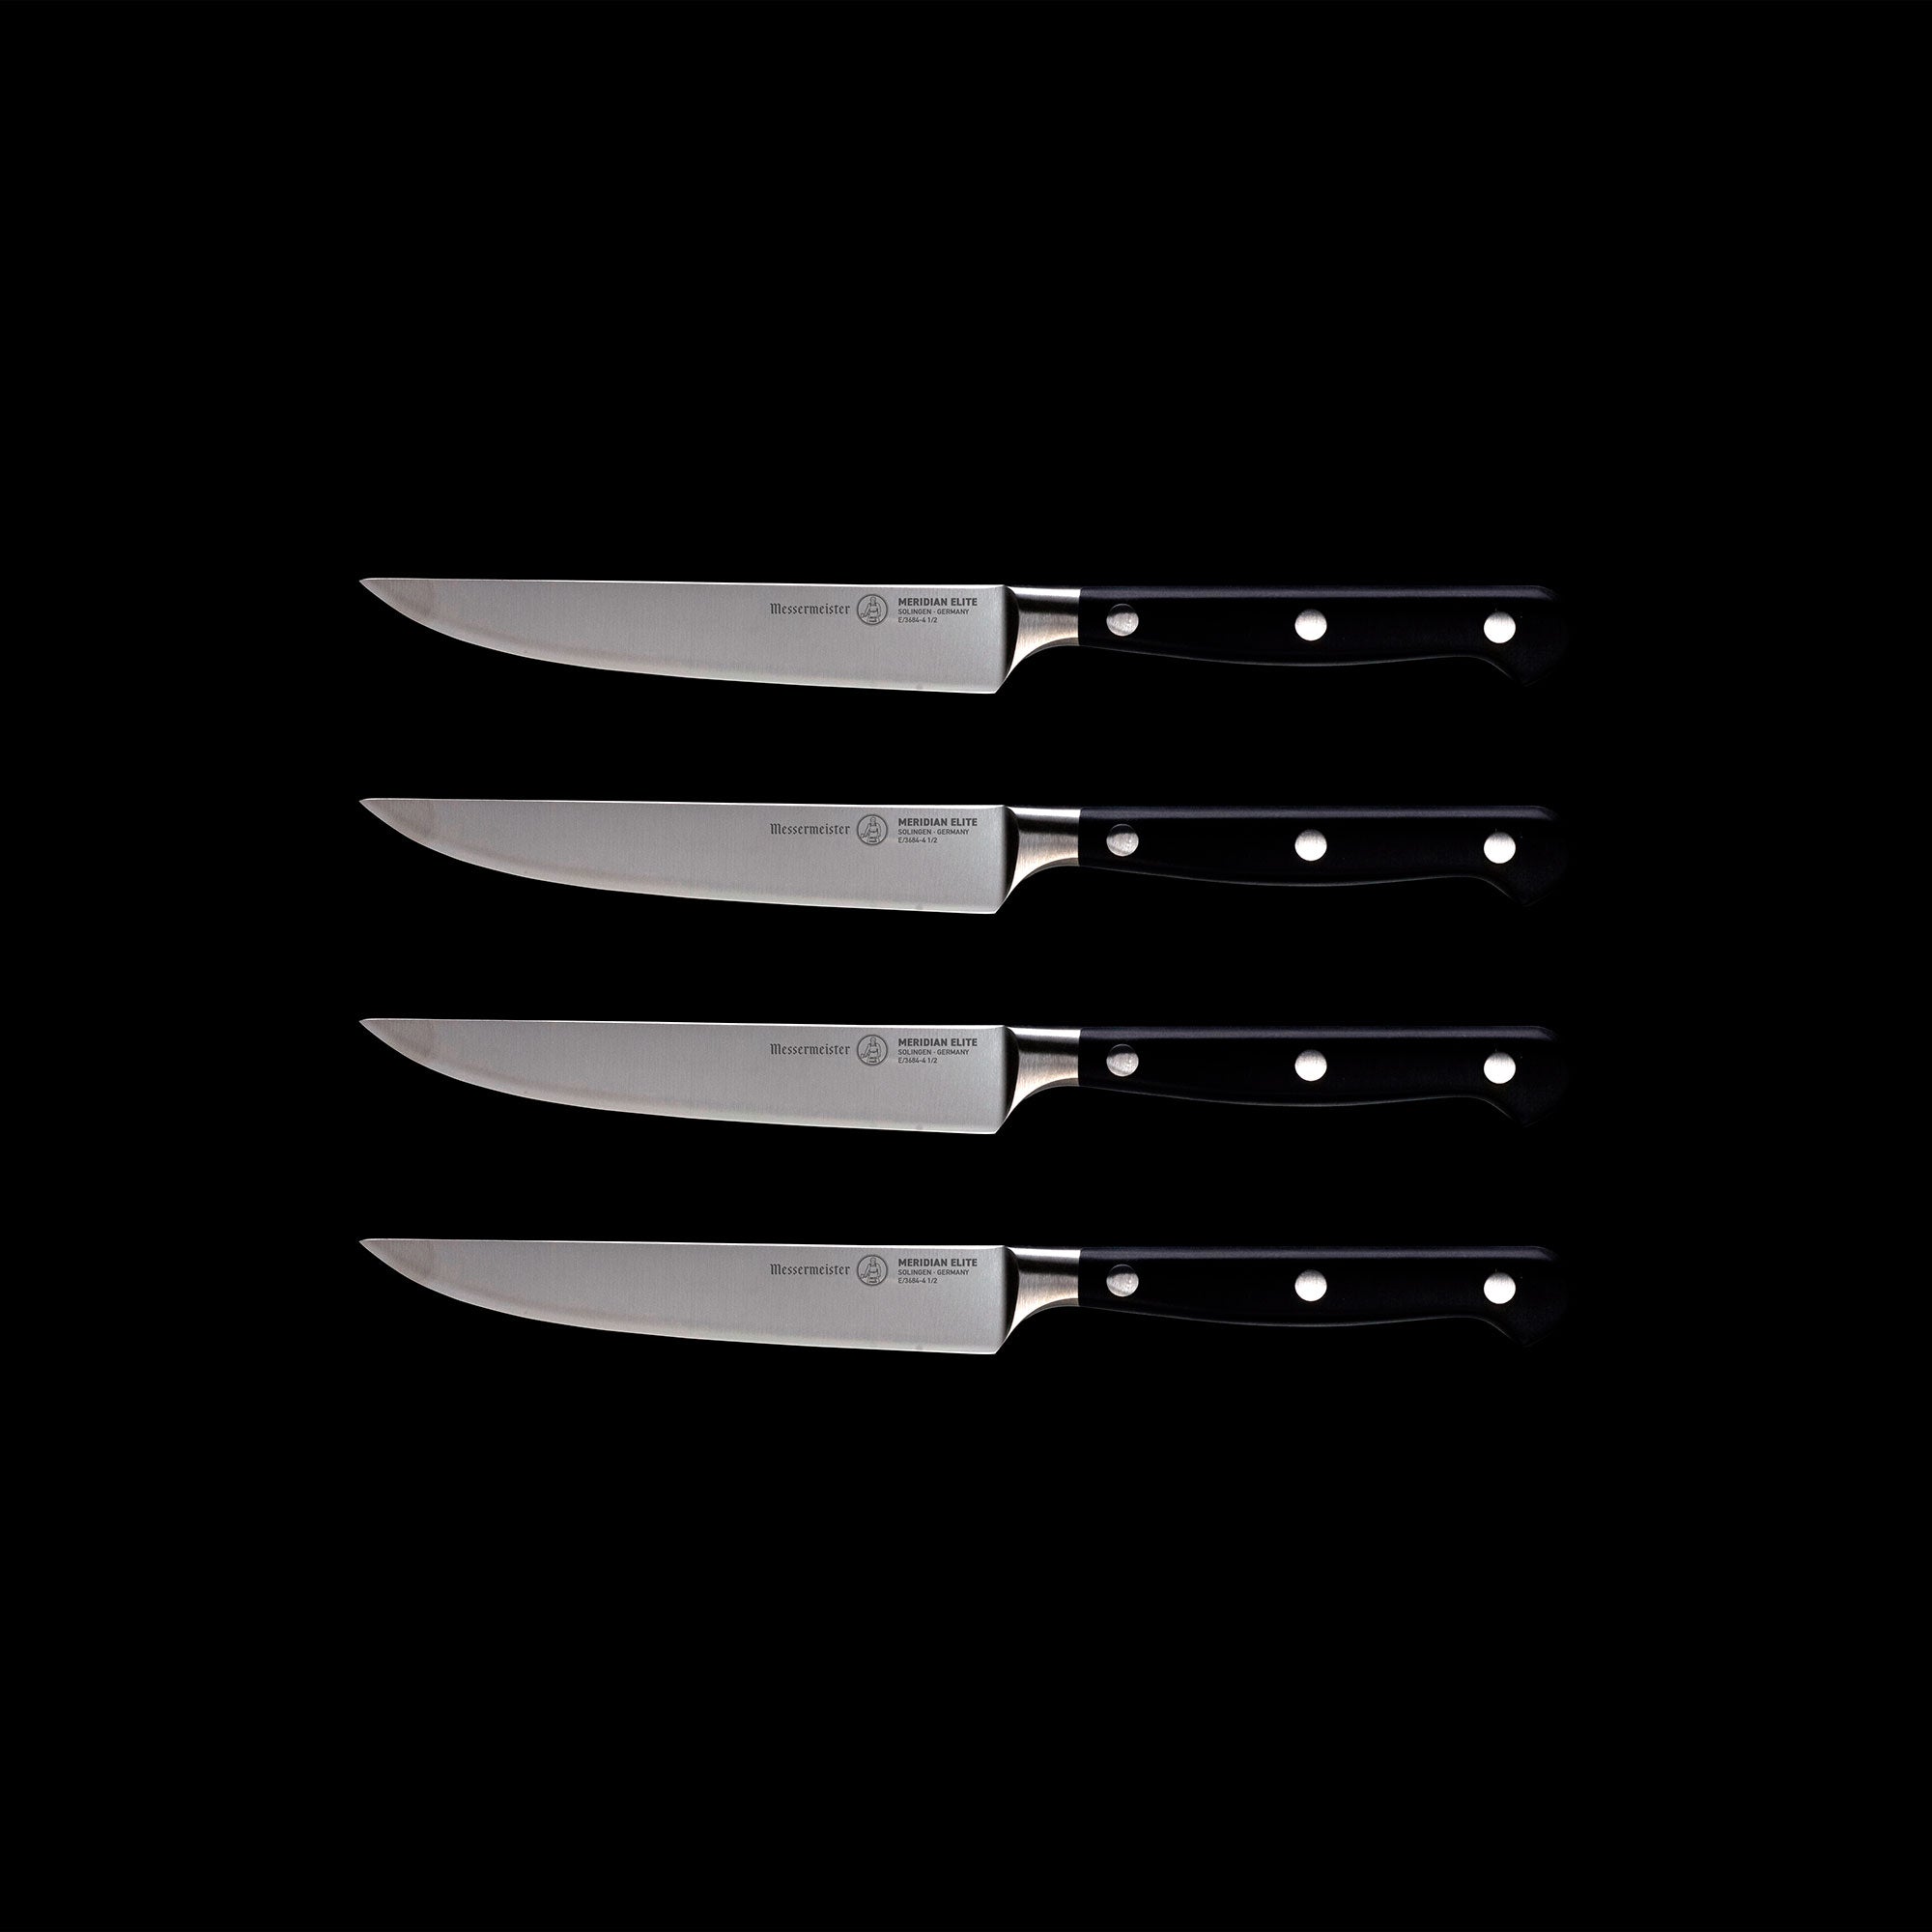 4 pc Steak Knife Set - Messermeister WRANGLER Messermeister 4-Pc Wrangler Steak  Knife Set, Messermeister Meridian Elite 8in Granton Edge Carving Knife